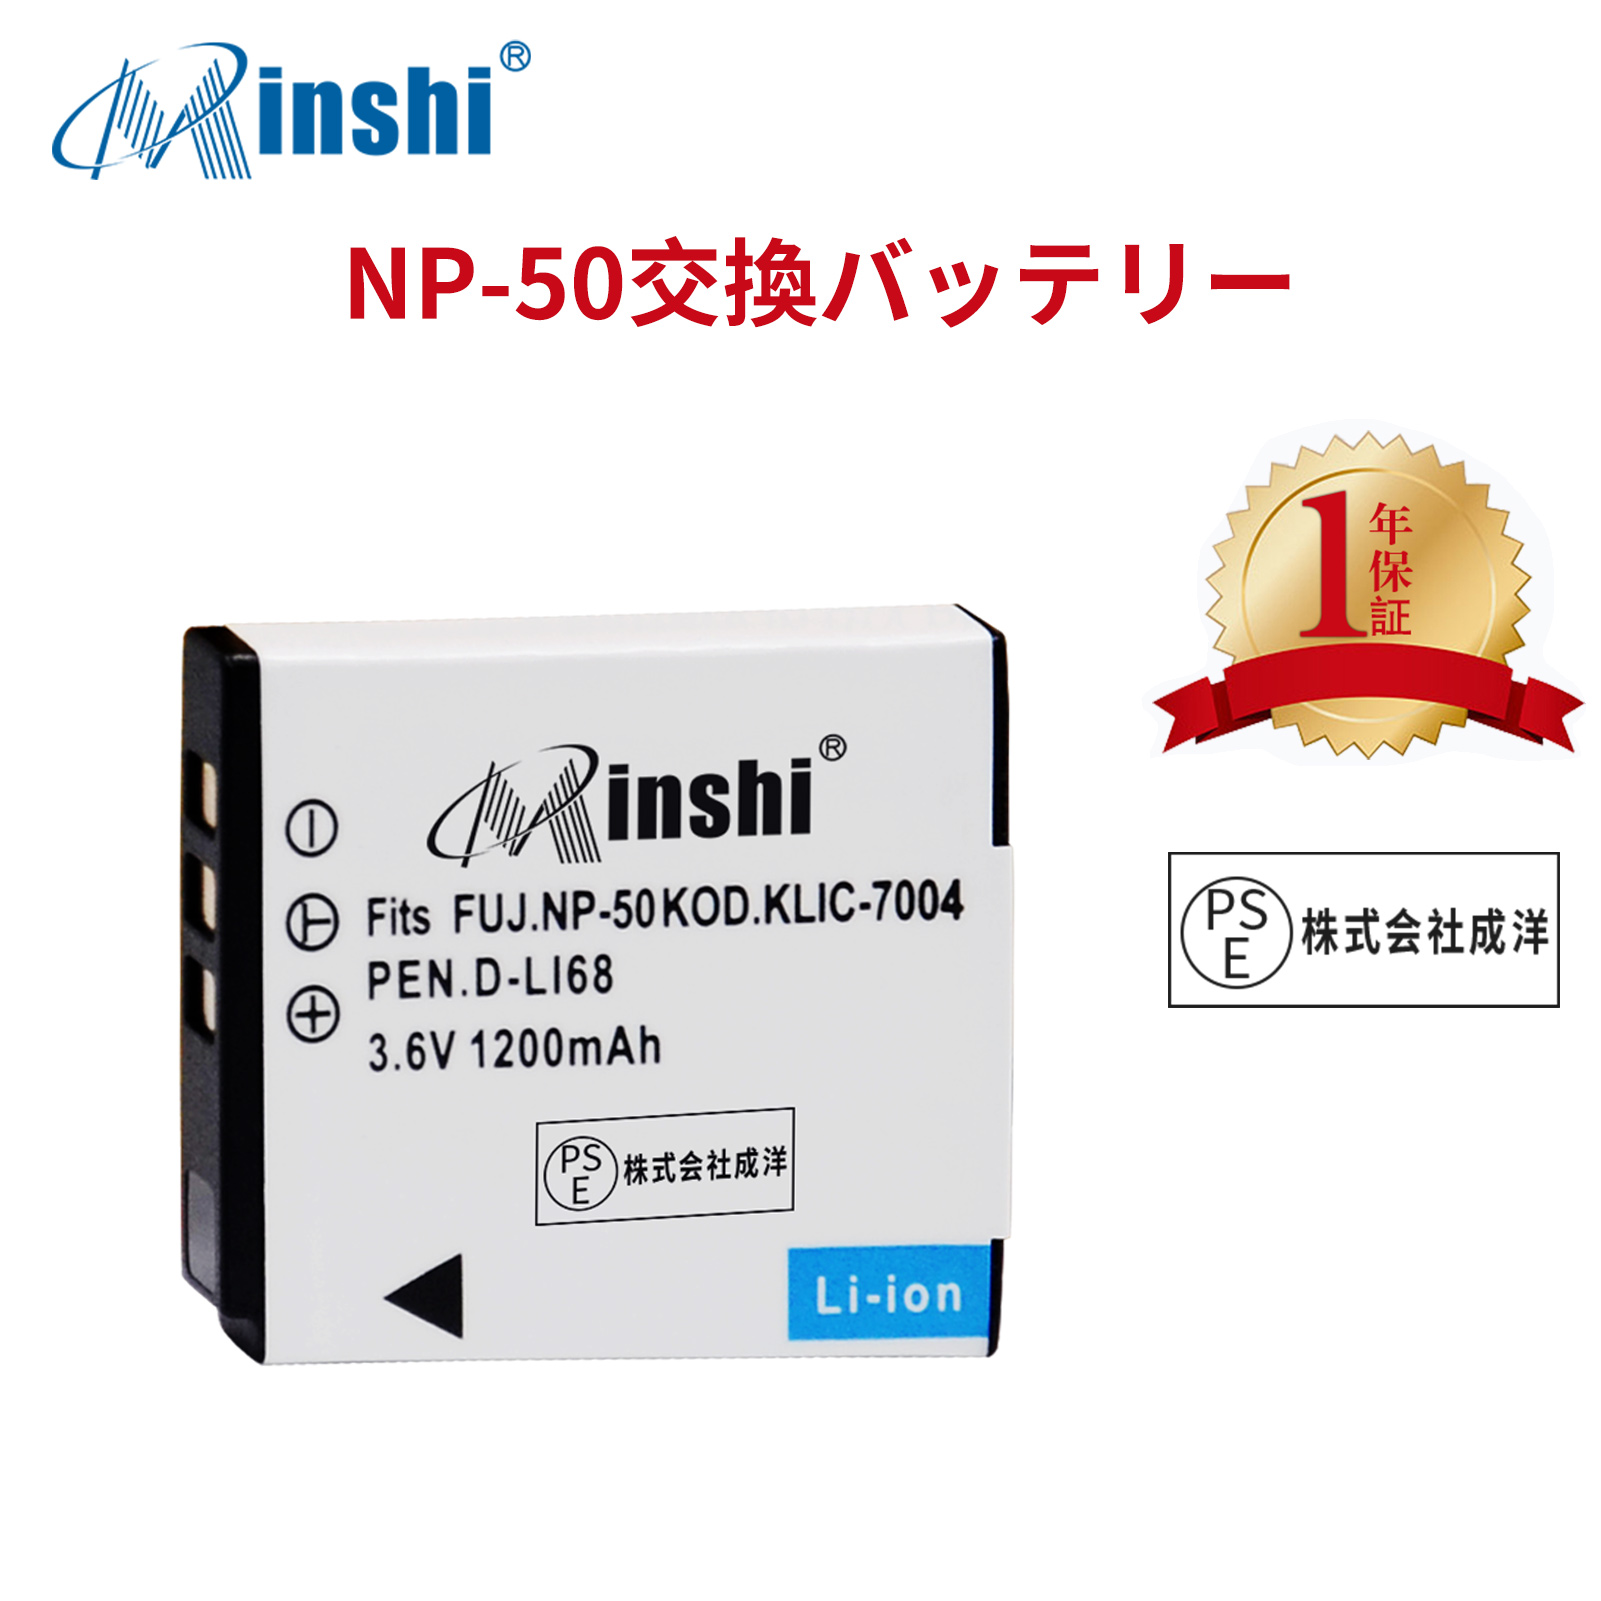 【1年保証】 minshi FUJIFILM NP-50A F900EXR対応 NP-50  1200mAh PSE認定済 高品質交換用バッテリー